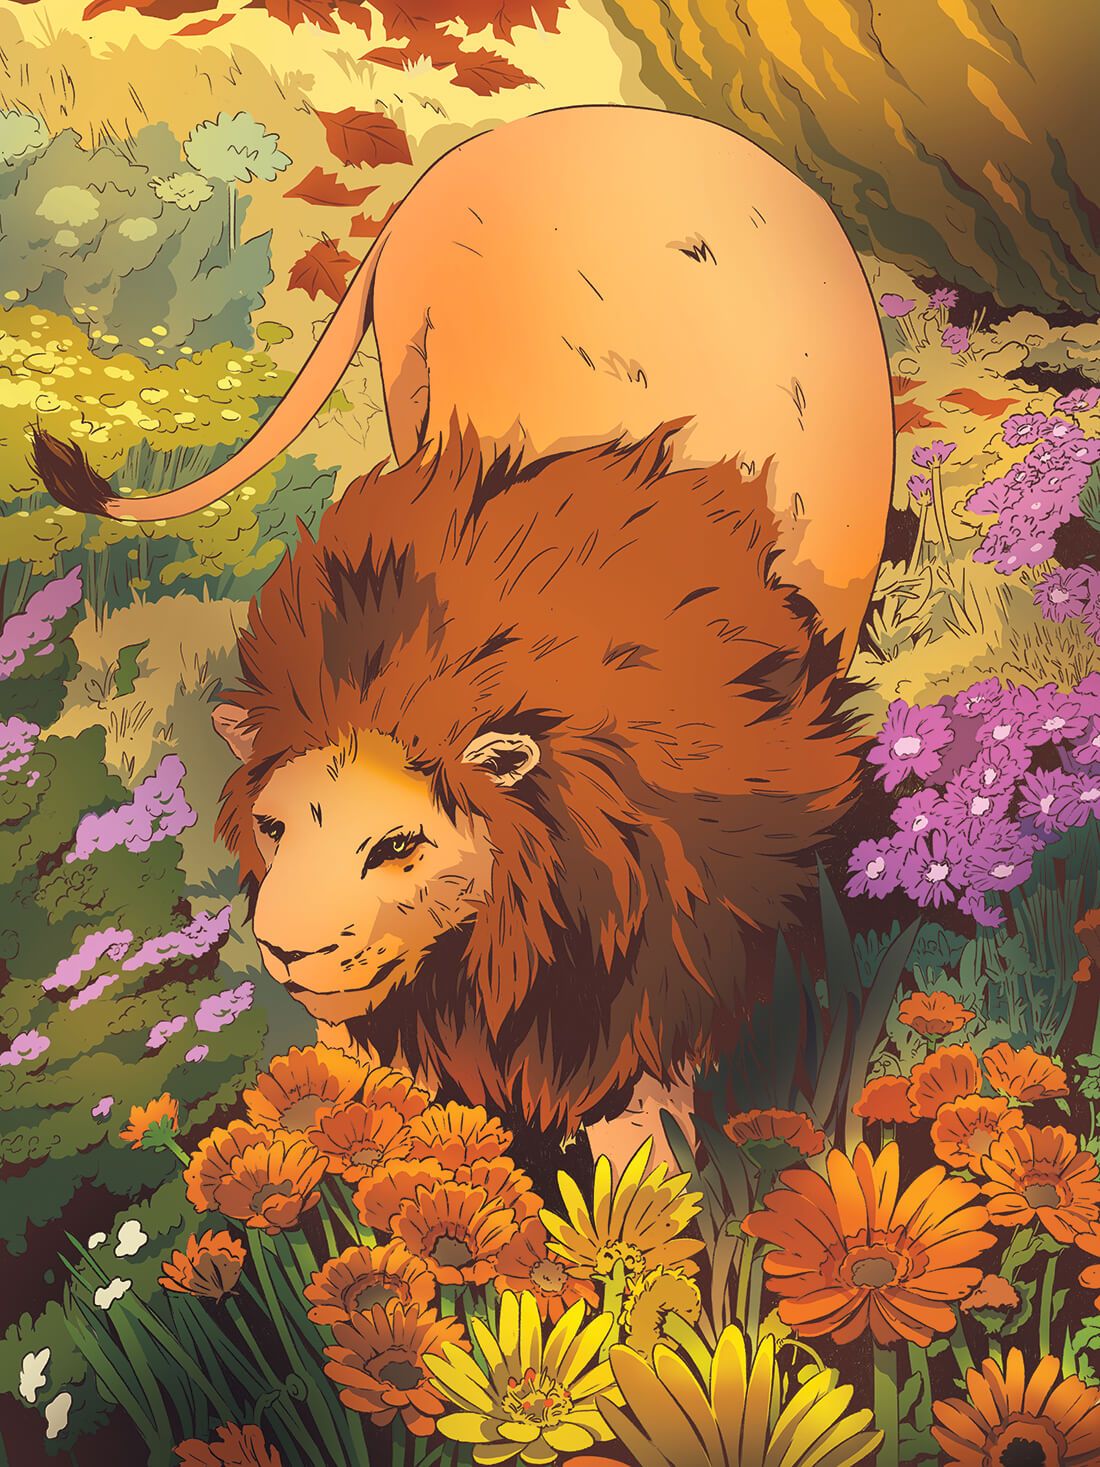 Lion in a Field of Flowers